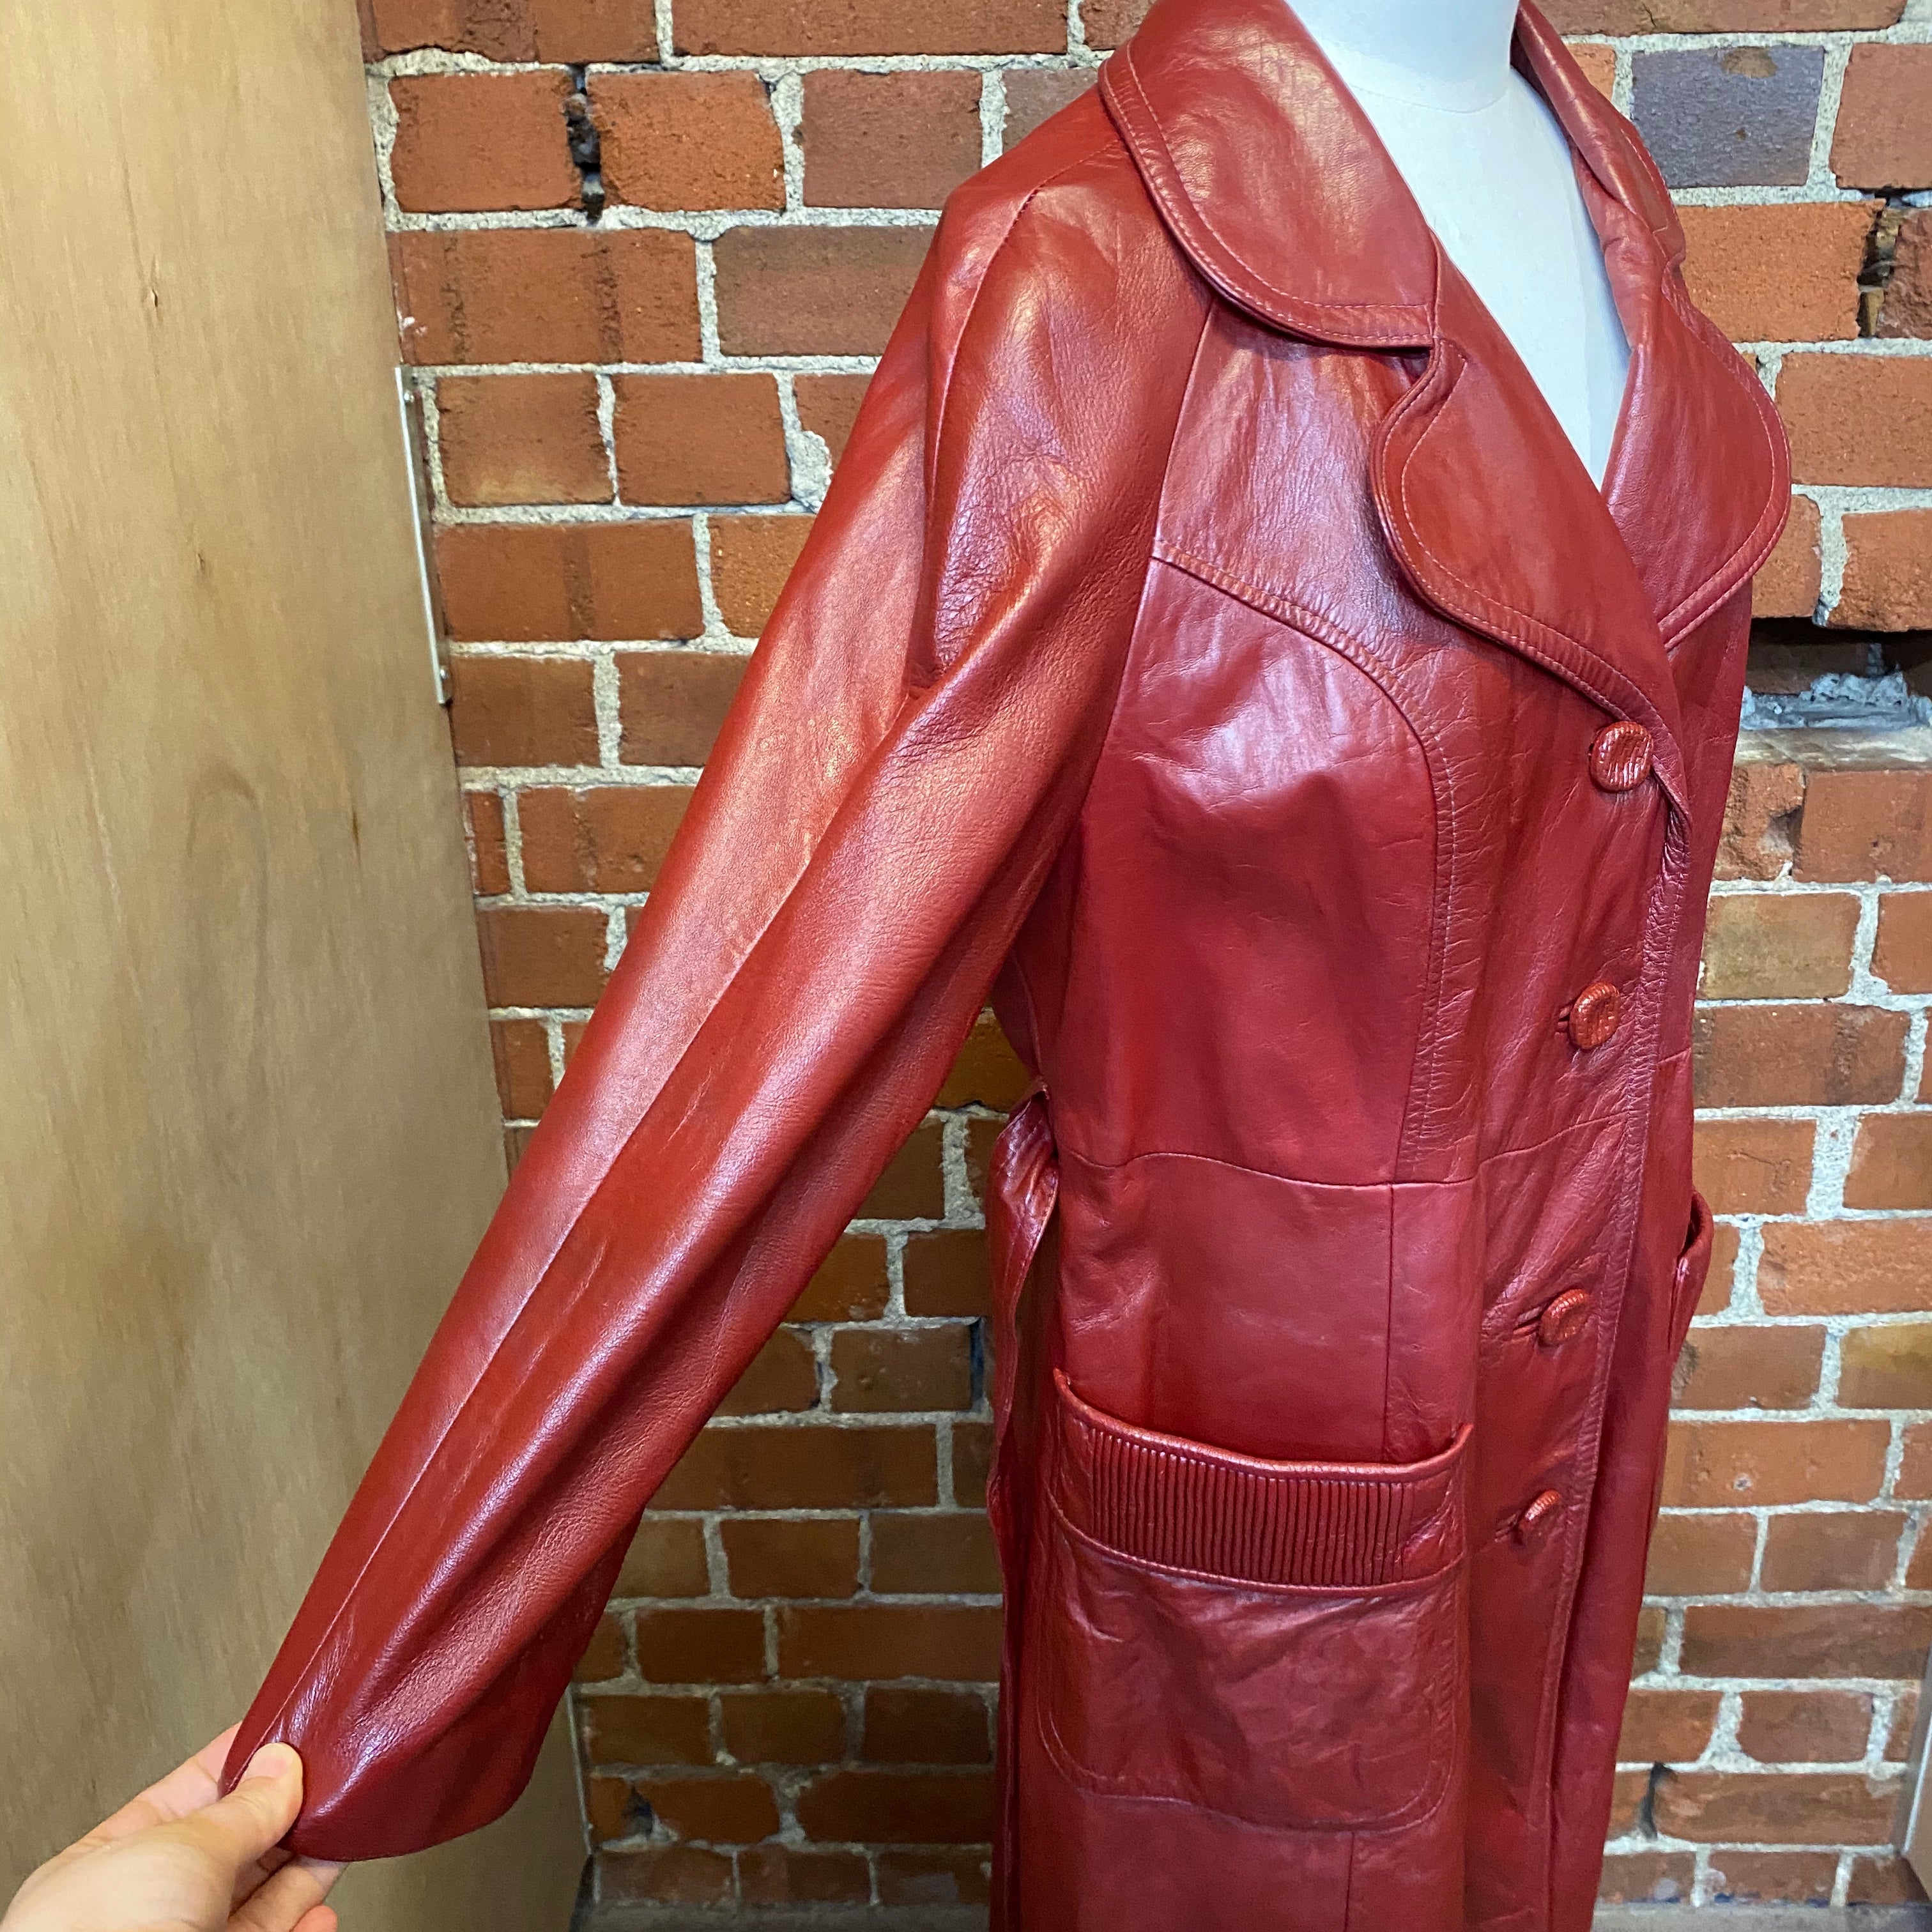 1970s genuine leather coat